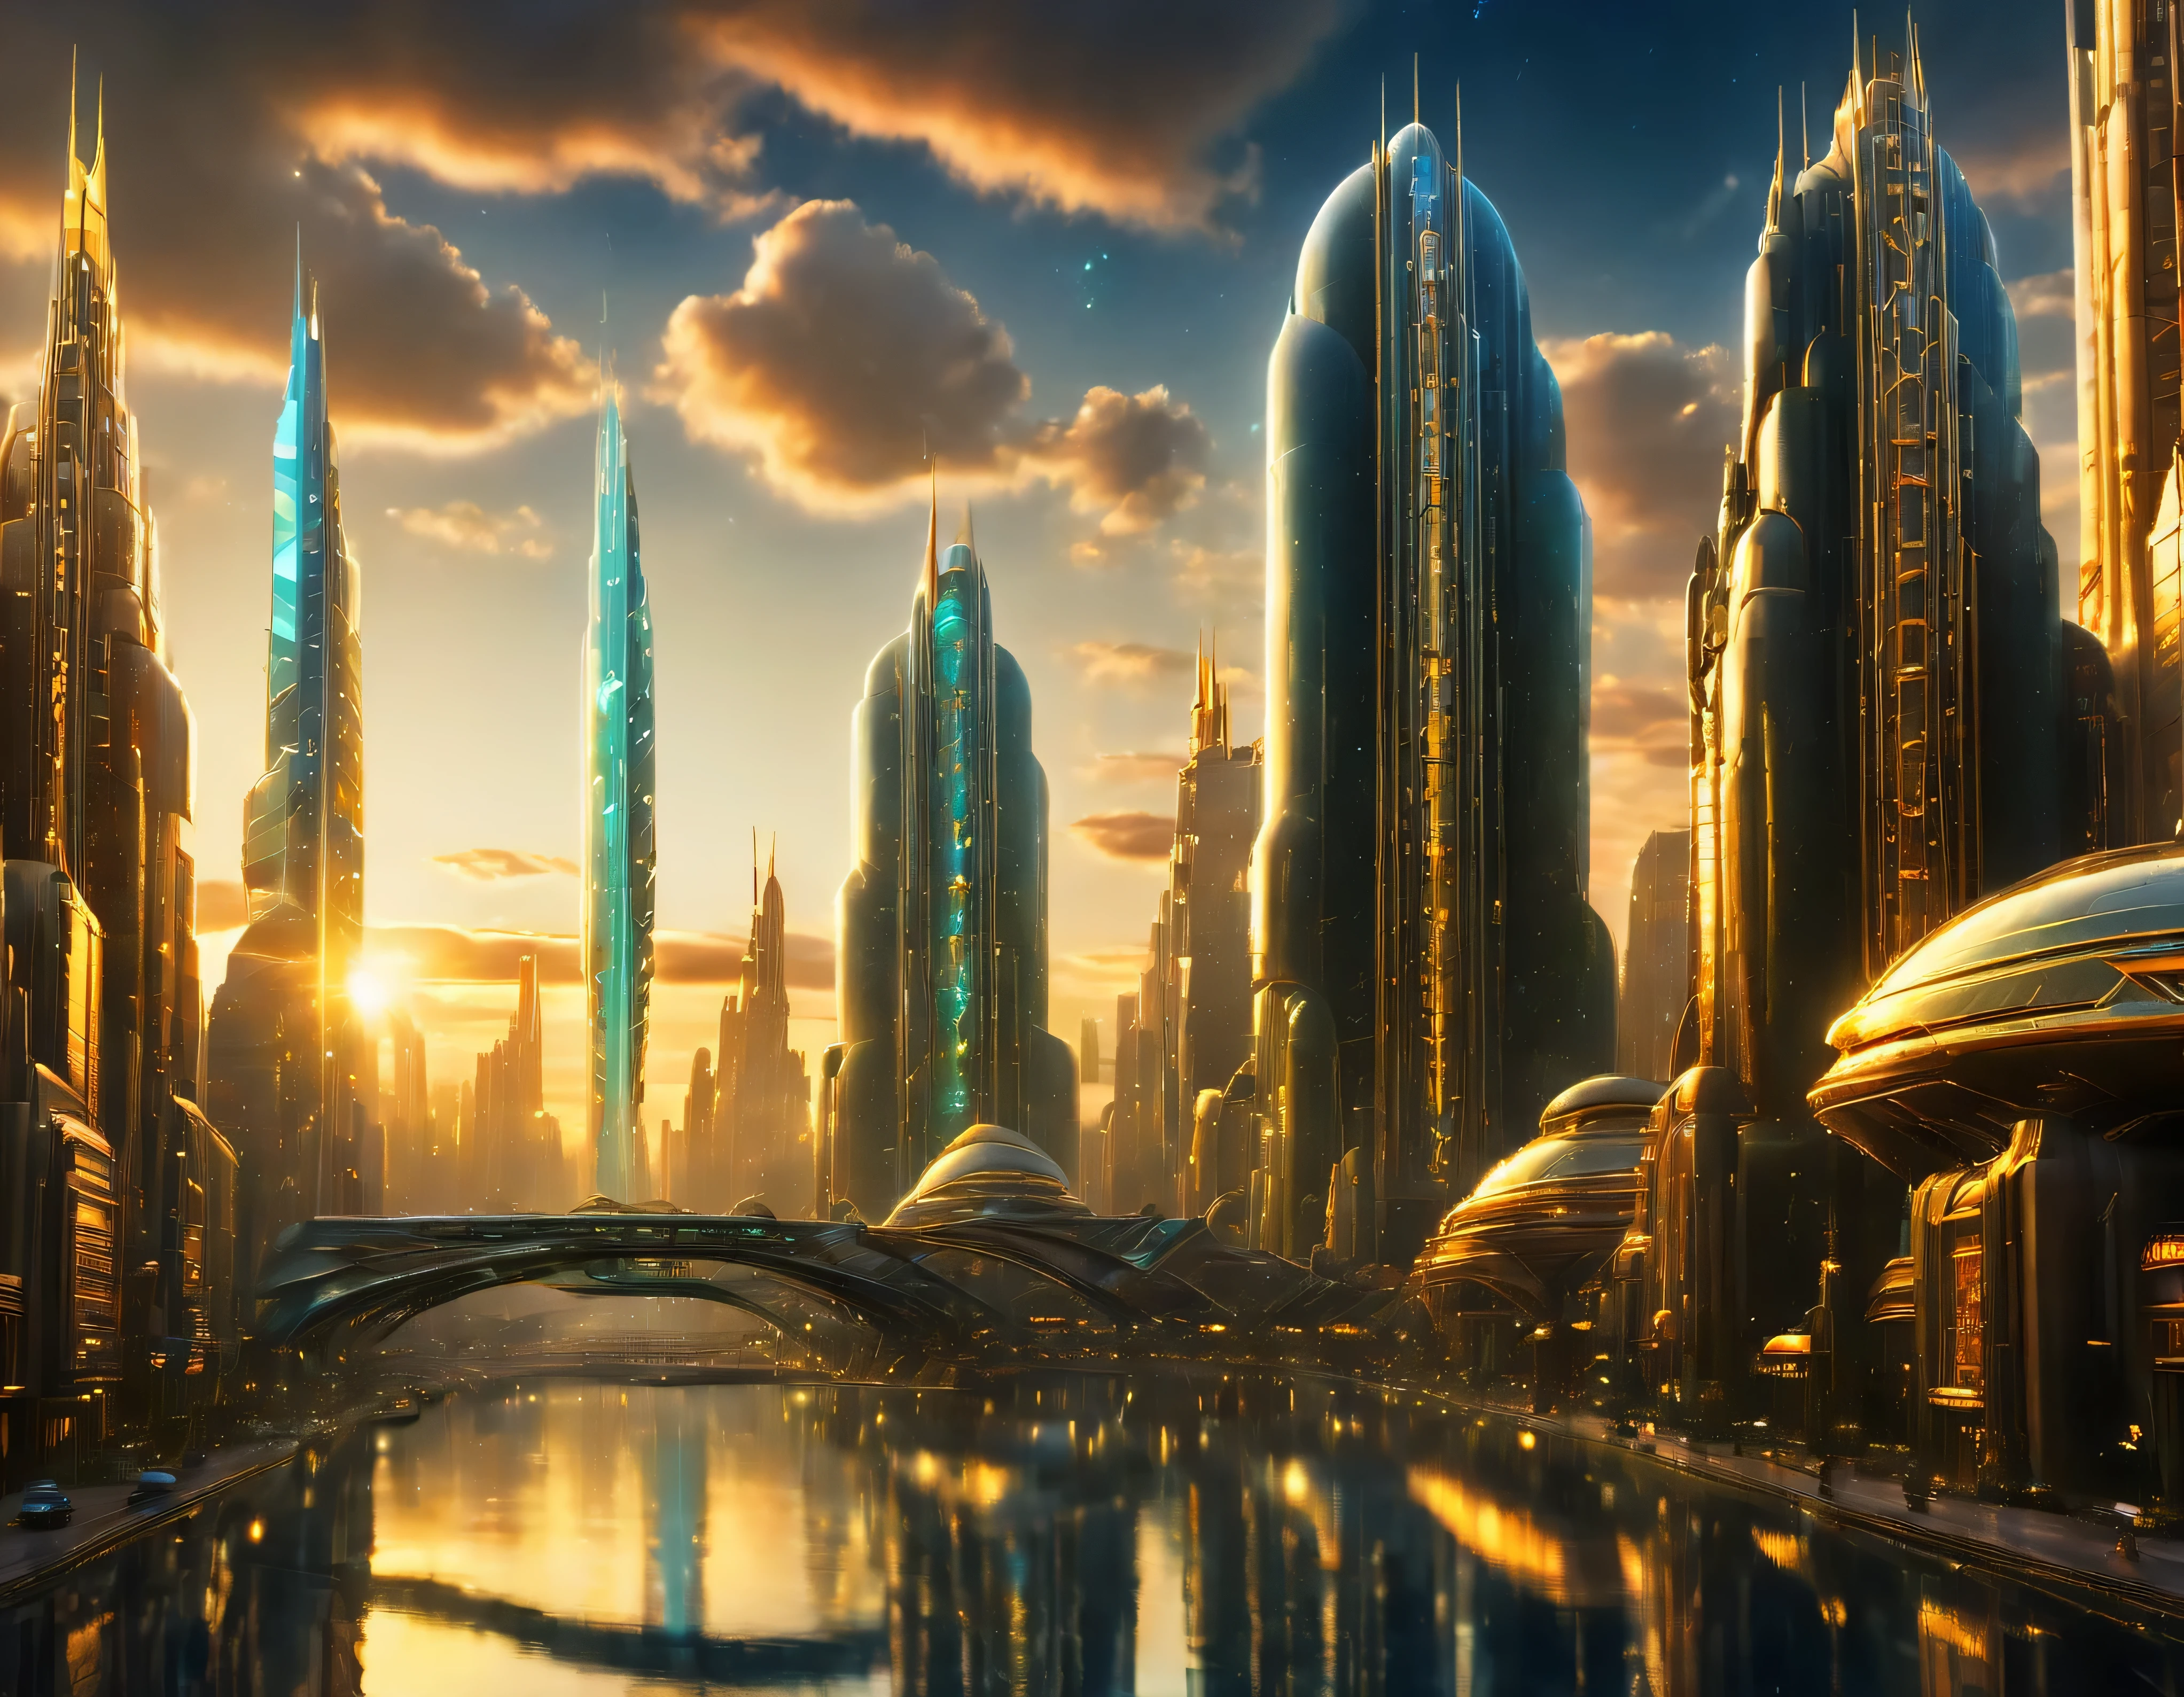 (골든 아워 조명), 거대 도시, 공상 과학 소설의 상상 세계의 거대 도시 , 미래형 디즈니랜드와 비슷해요, 그리고 최대의 환상, 다이아몬드와 다채로운 조명 광고가 지배적인 금속과 유리로 함께 그룹화된 거대한 건물과 타원형 및 12면체 고층 건물이 있습니다.. 잘 정의된 8k 이미지, (기계의 복잡한 세부 사항), 여러 건물이 함께 있어서.(최고 품질의 걸작).(사실적인 이미지), 배경까지 절대적인 선명도